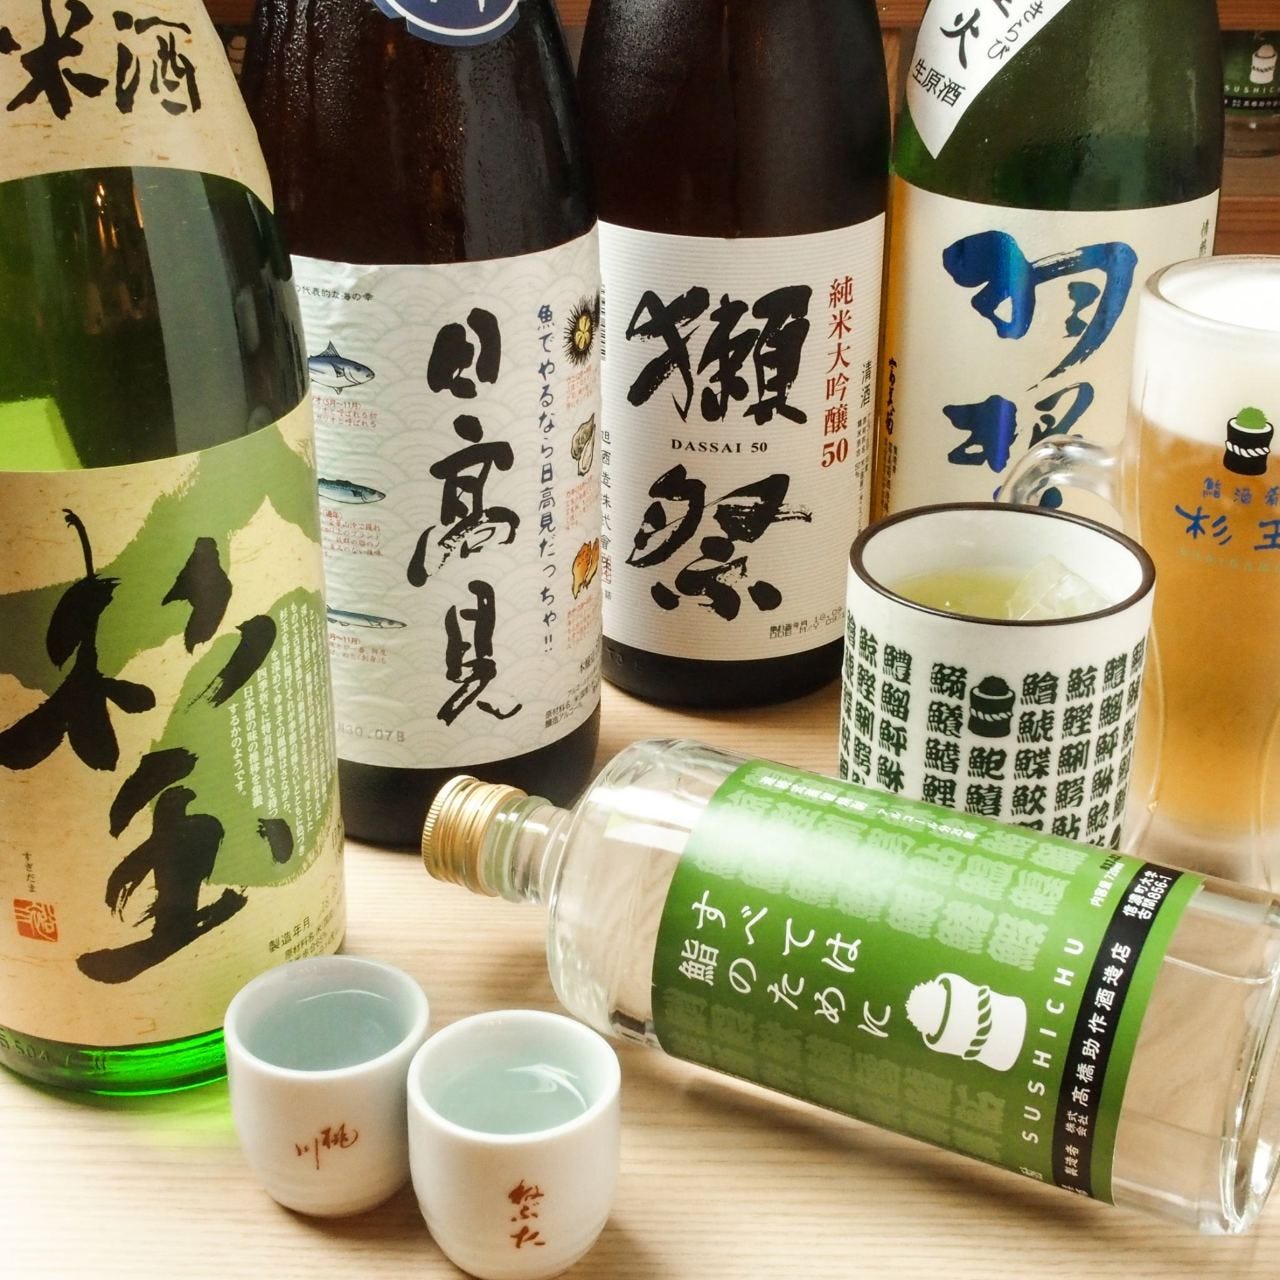 鮨・酒・肴 杉玉 中野坂上